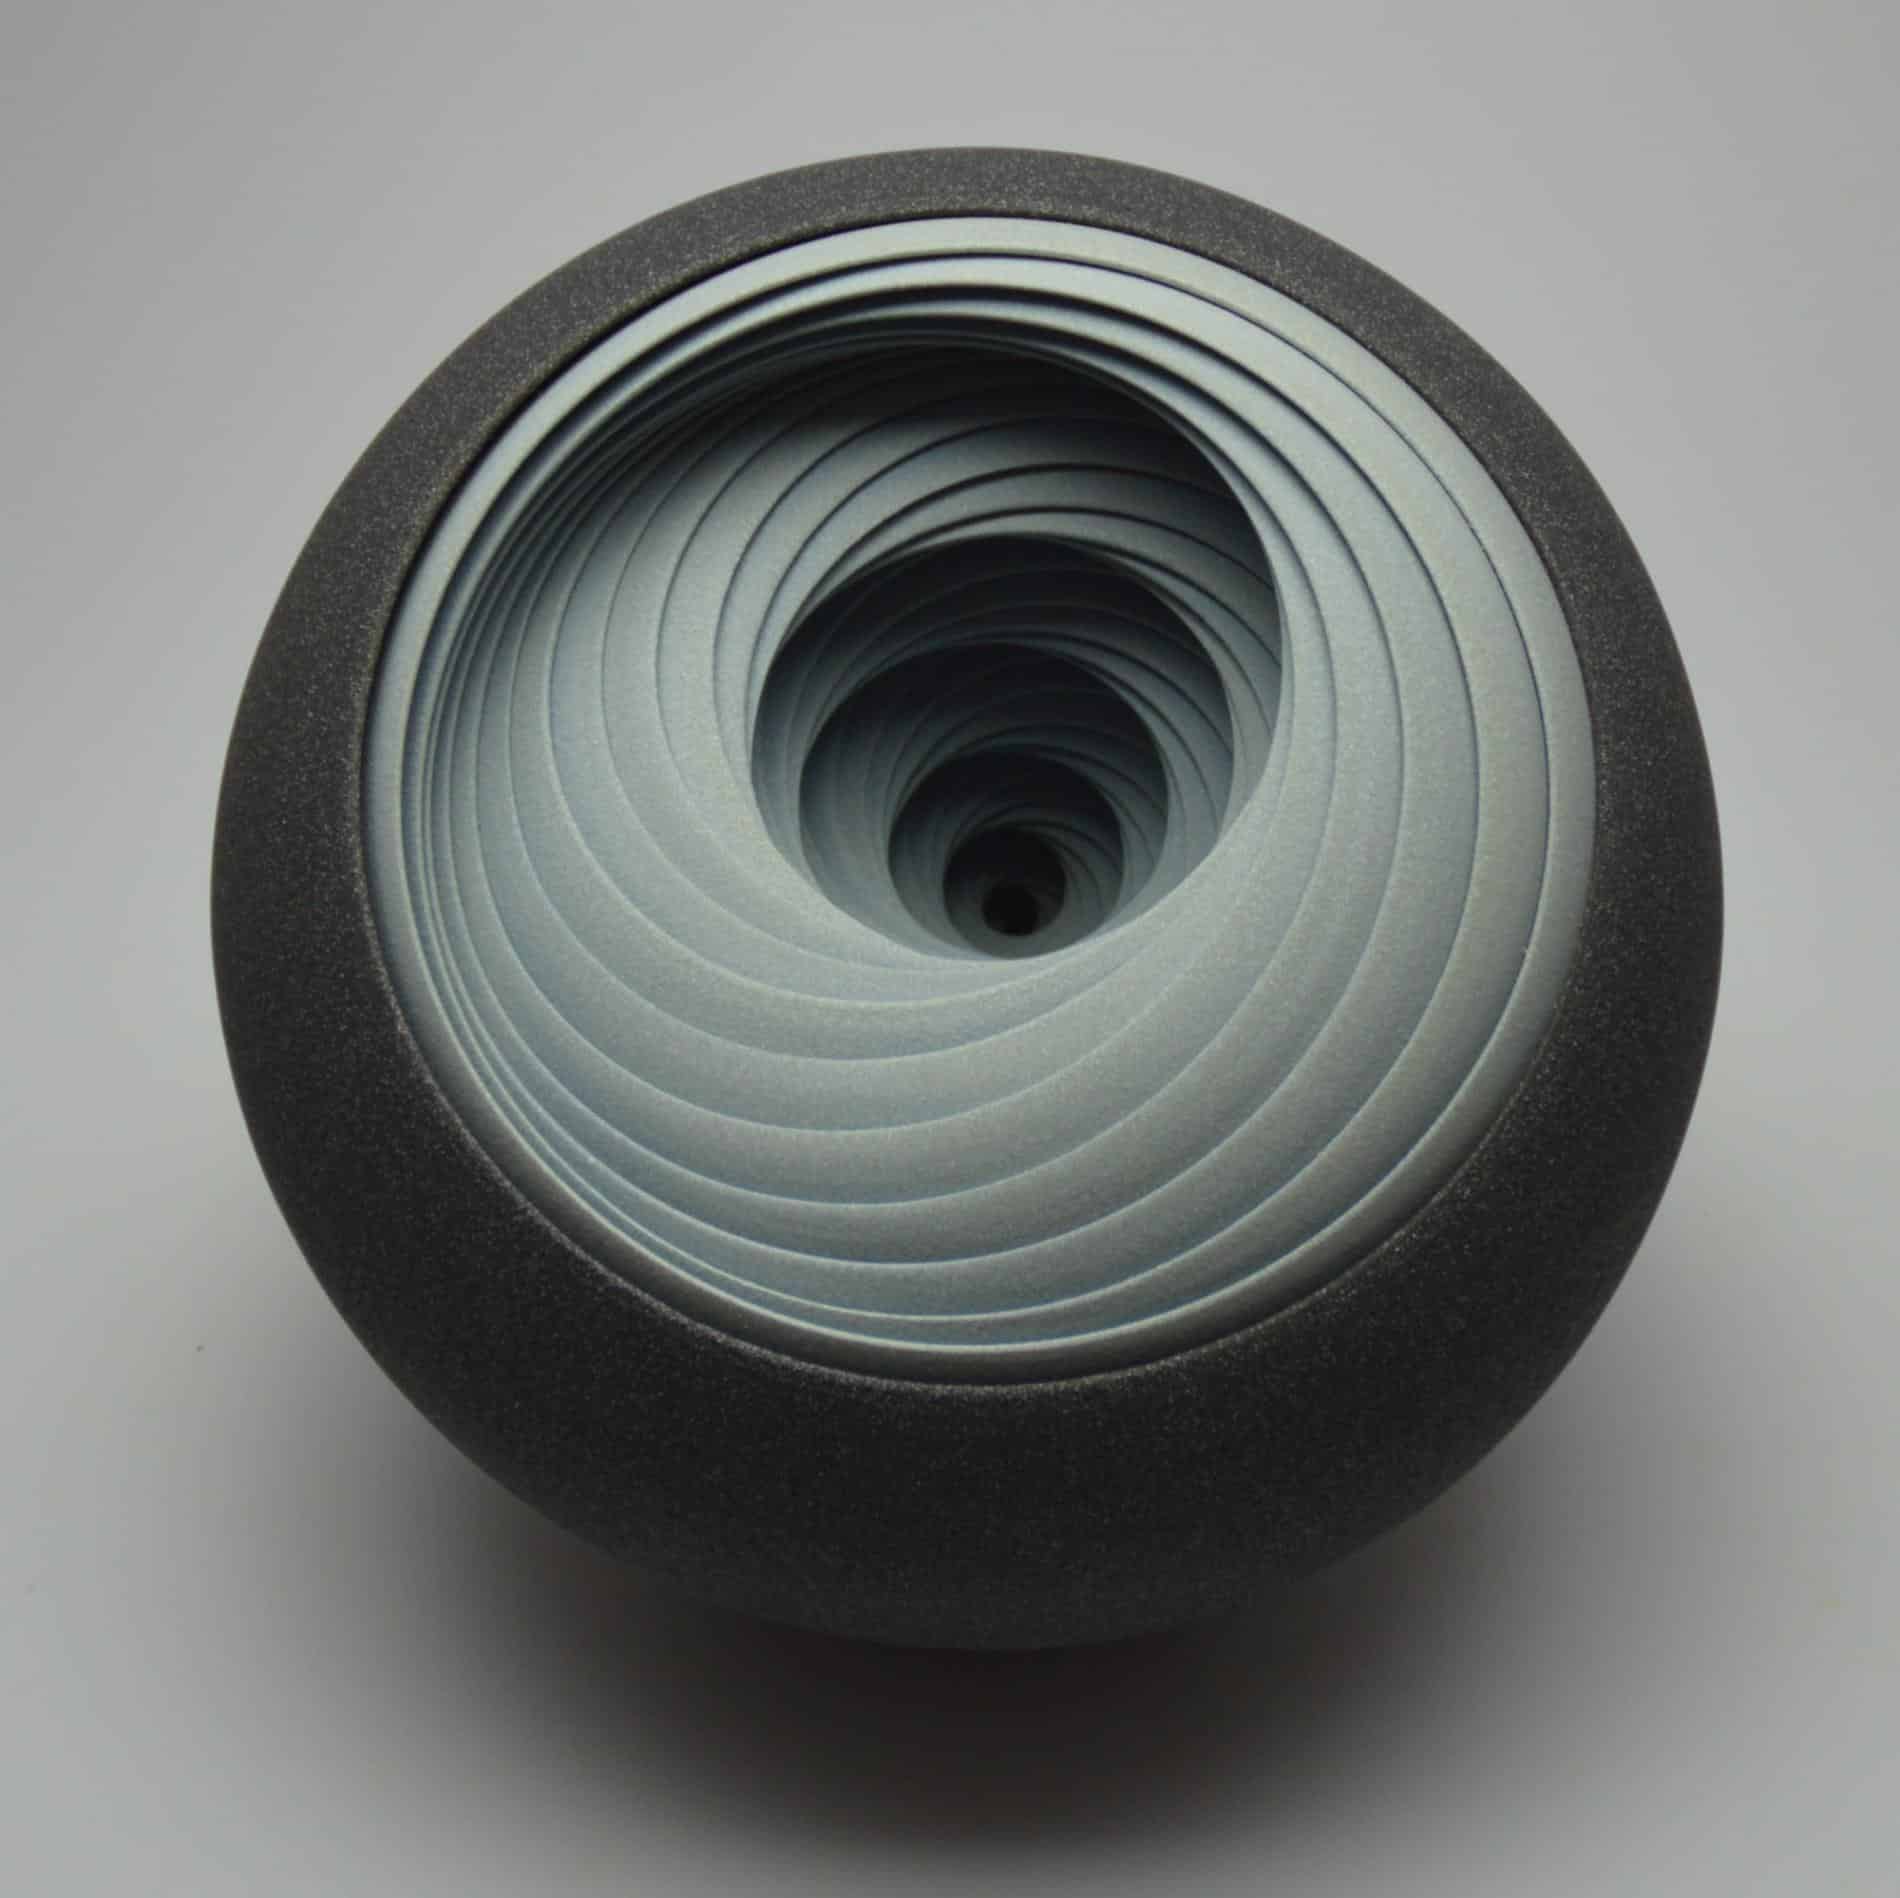 chambers escultura hipnotica escala de grises